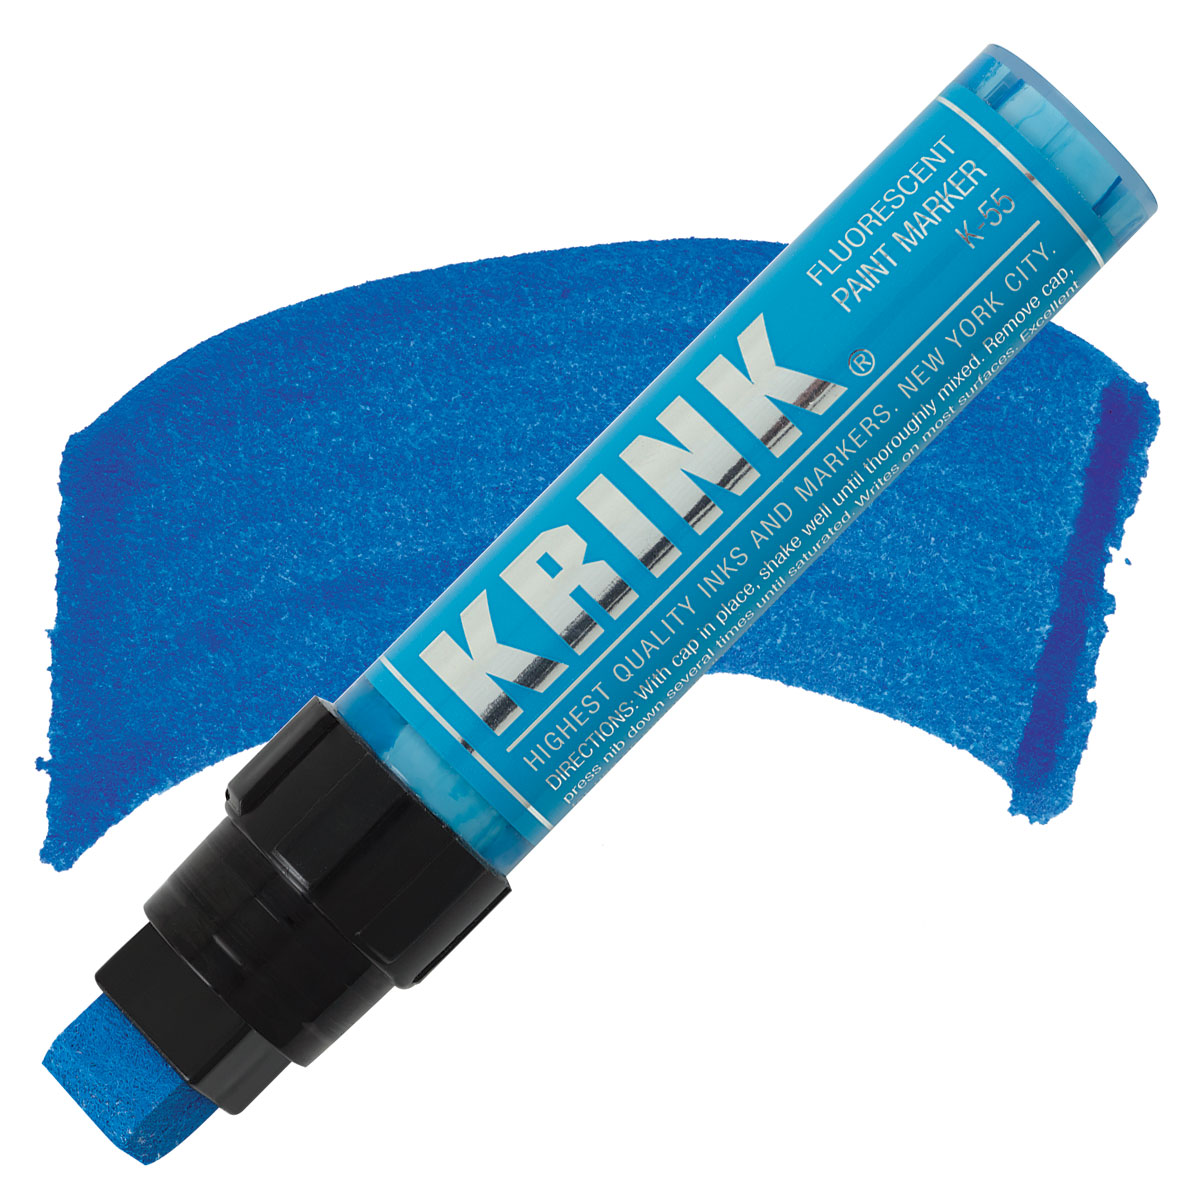 KRINK K-55 Paint Marker